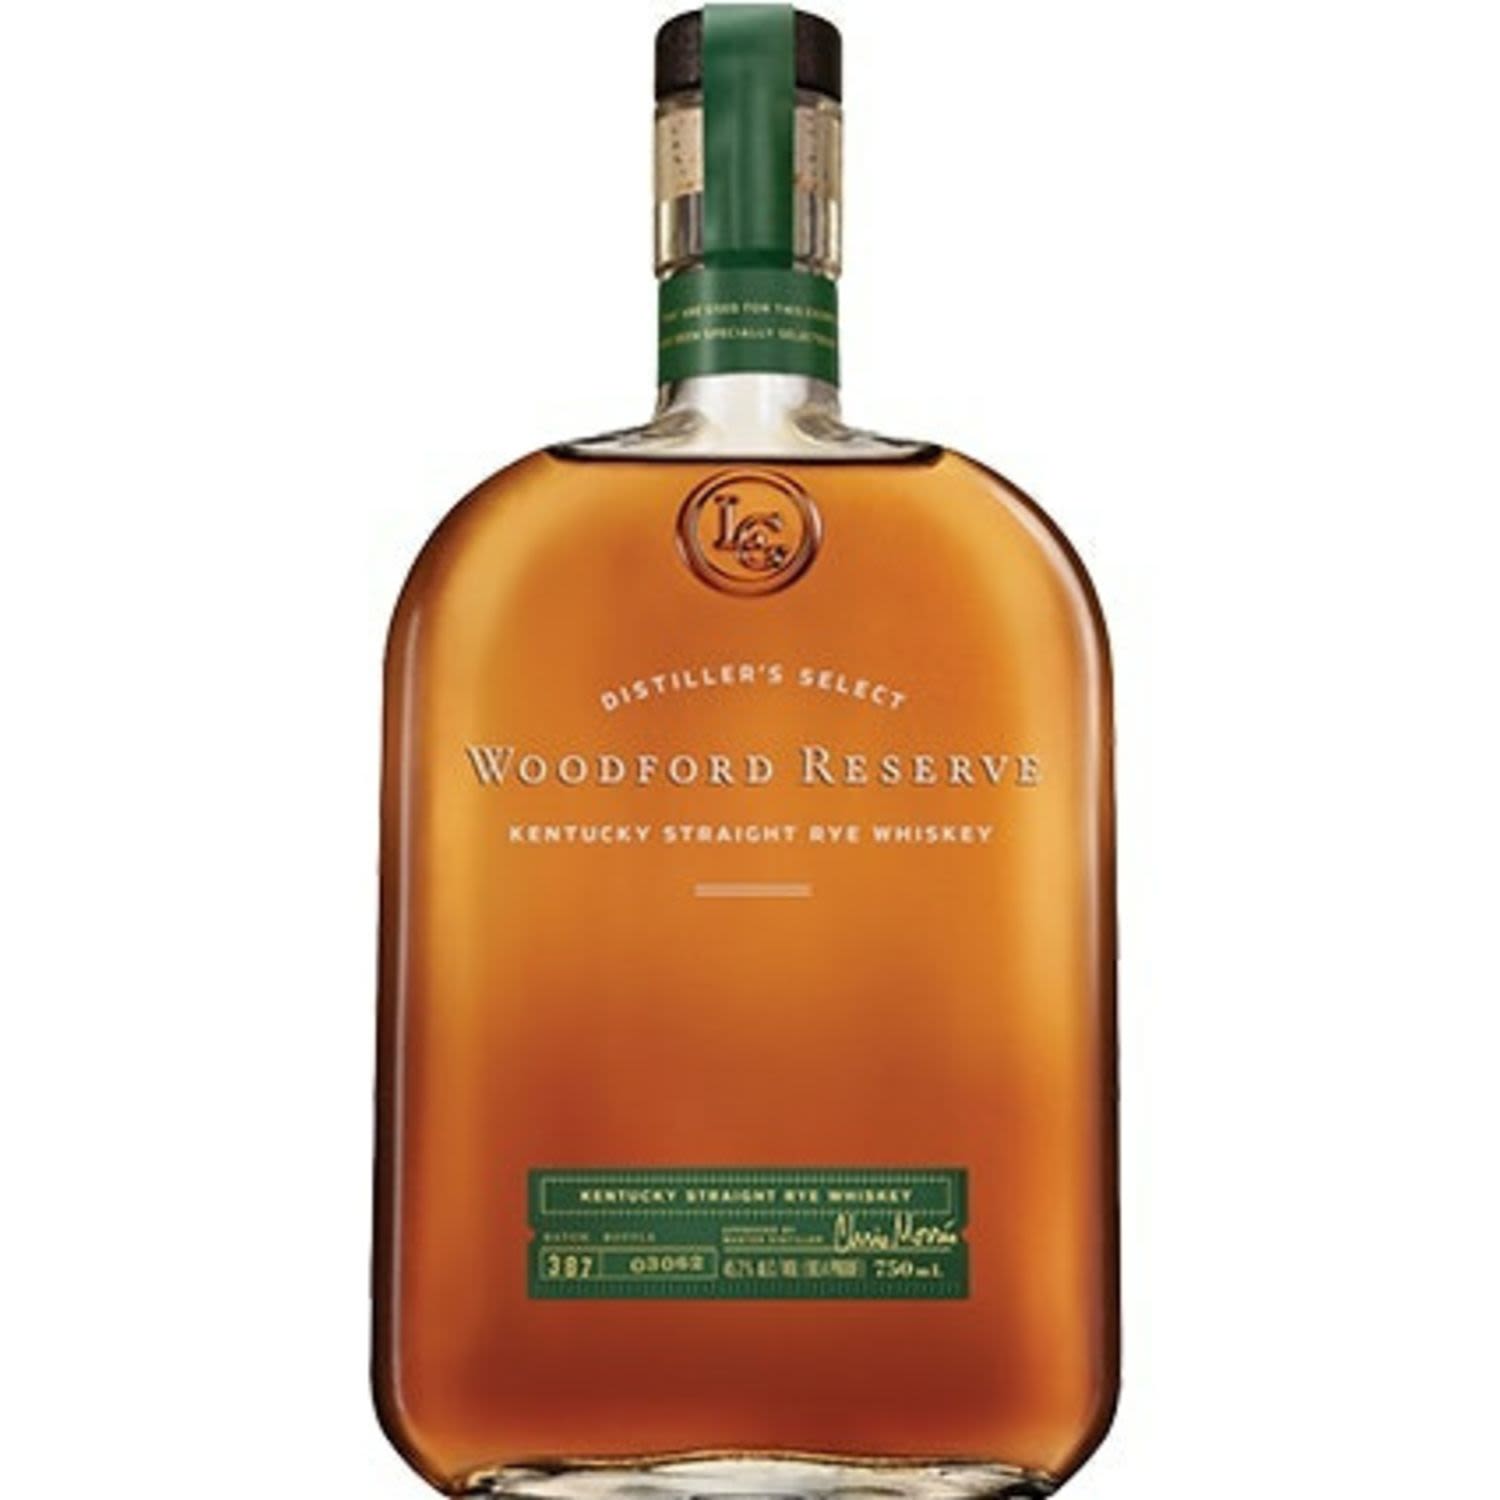 Woodford Reserve Rye Whisky 700mL Bottle